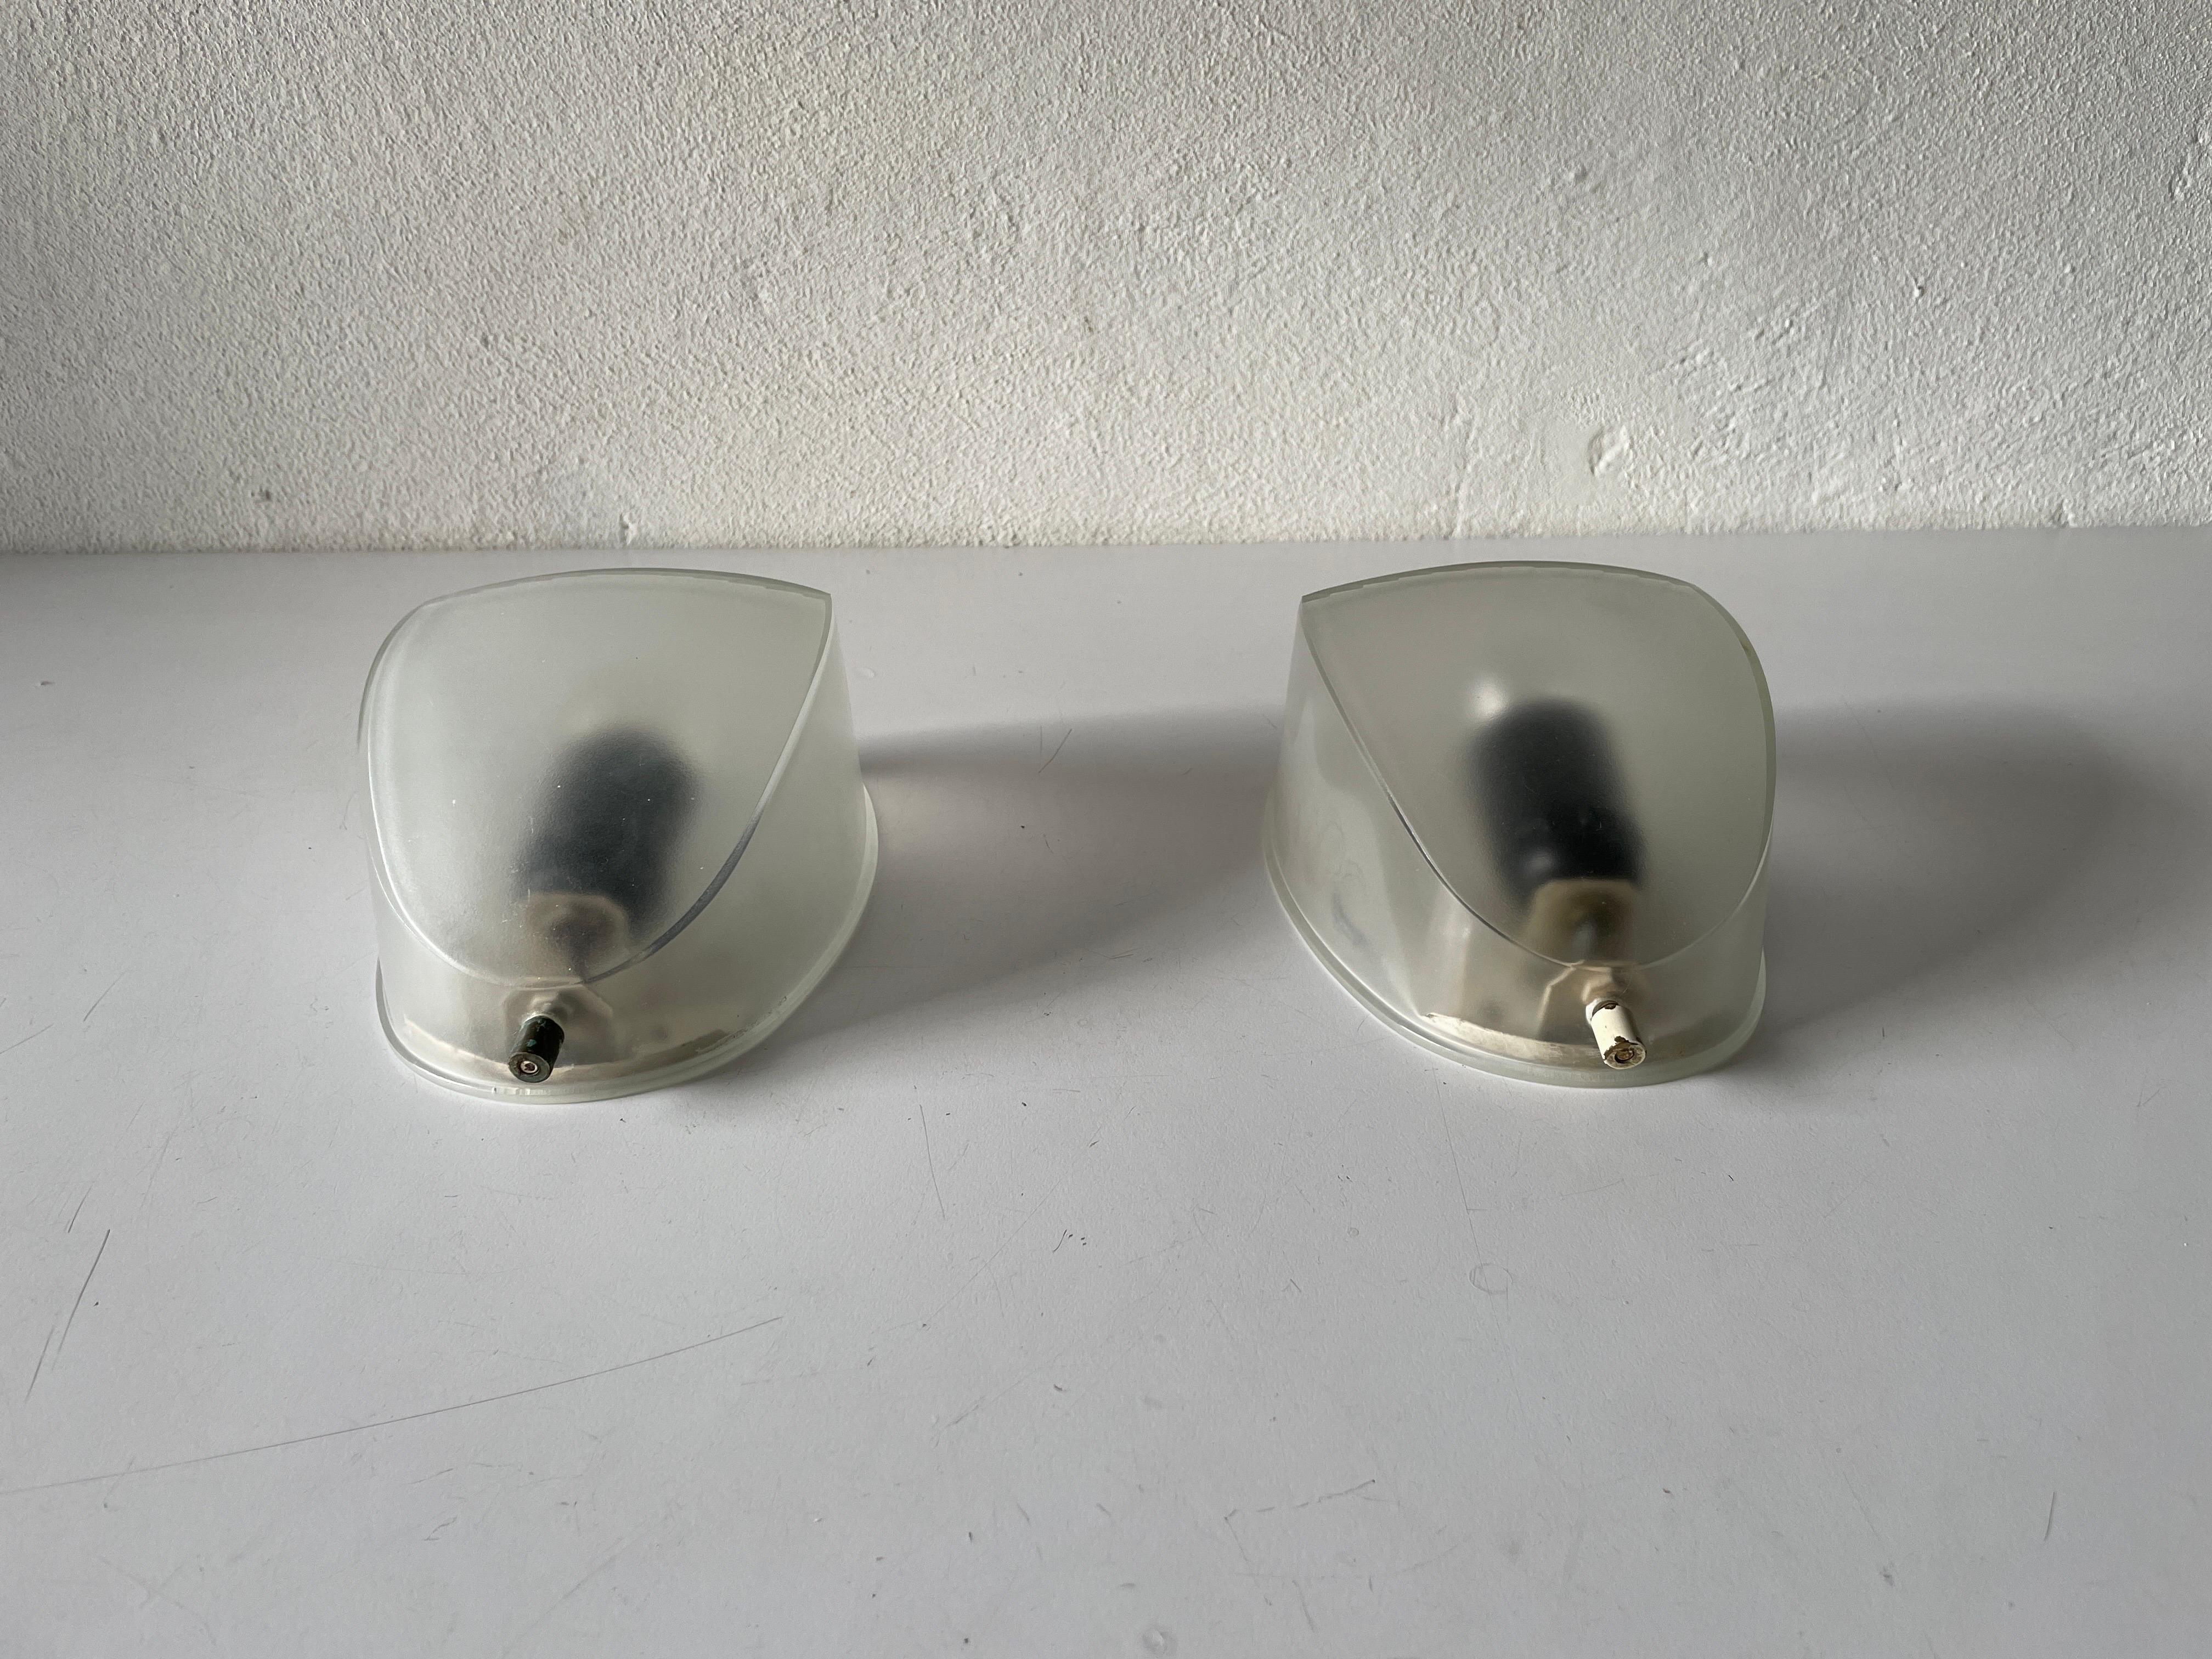 Paire d'appliques en verre transparent par Artemide, 1970, Italie.

Très belles appliques de haute qualité.

Les lampes sont en très bon état vintage.

Ces lampes fonctionnent avec des ampoules standard E27. 
Câblé et utilisable dans tous les